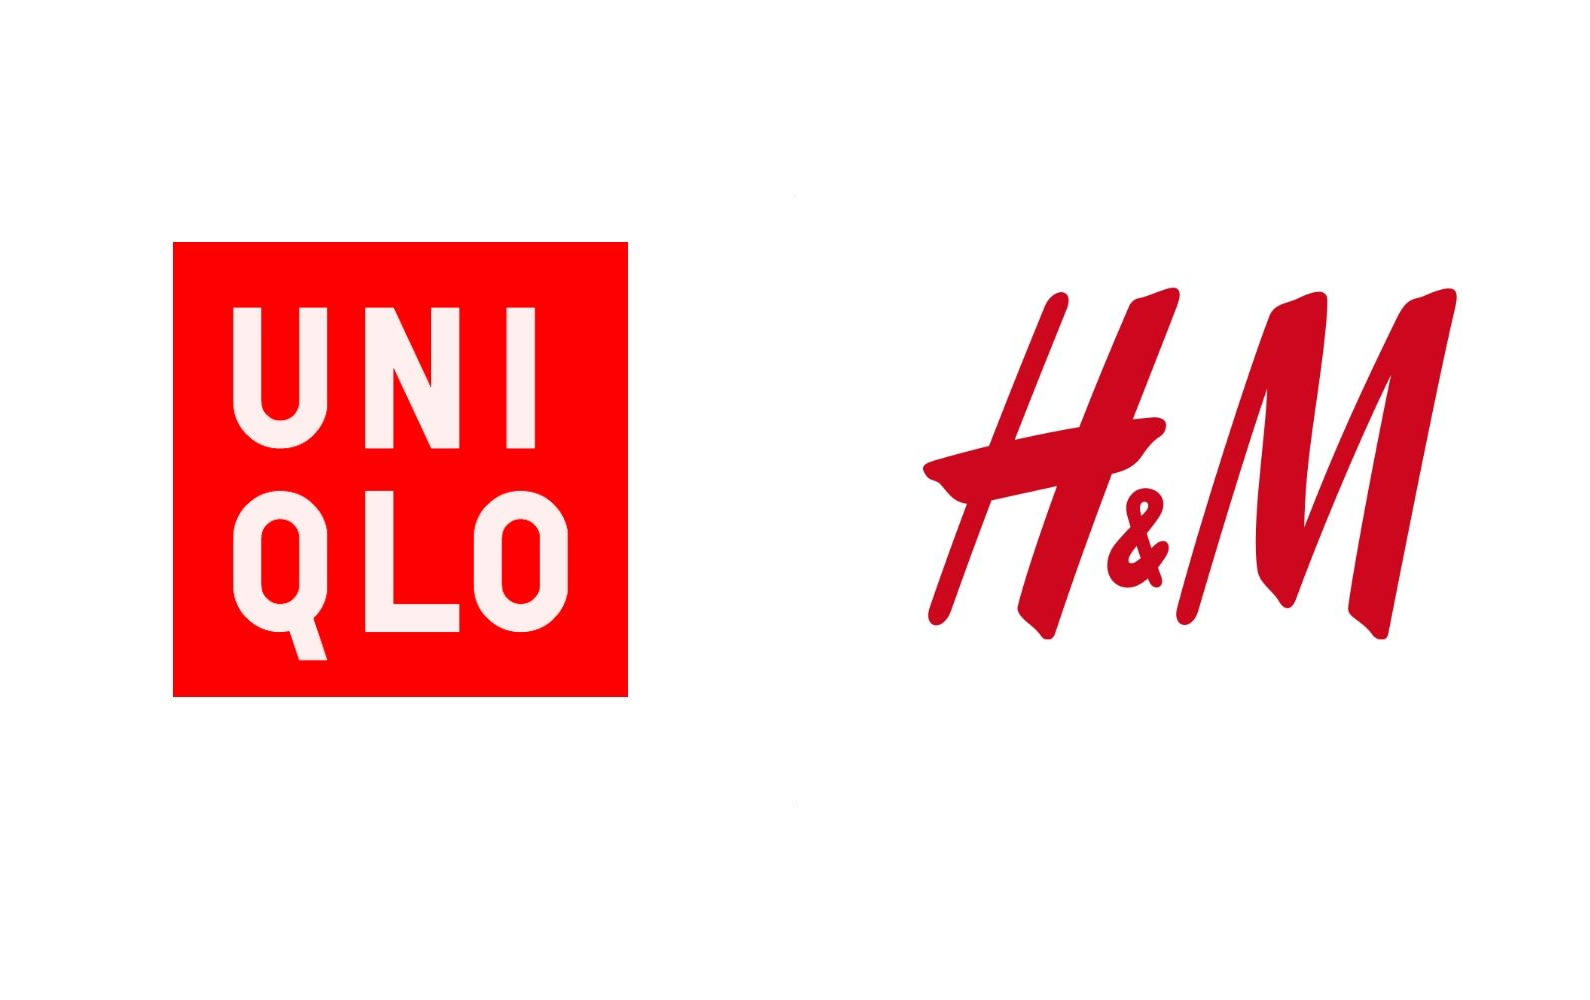 H&M and UNIQLO